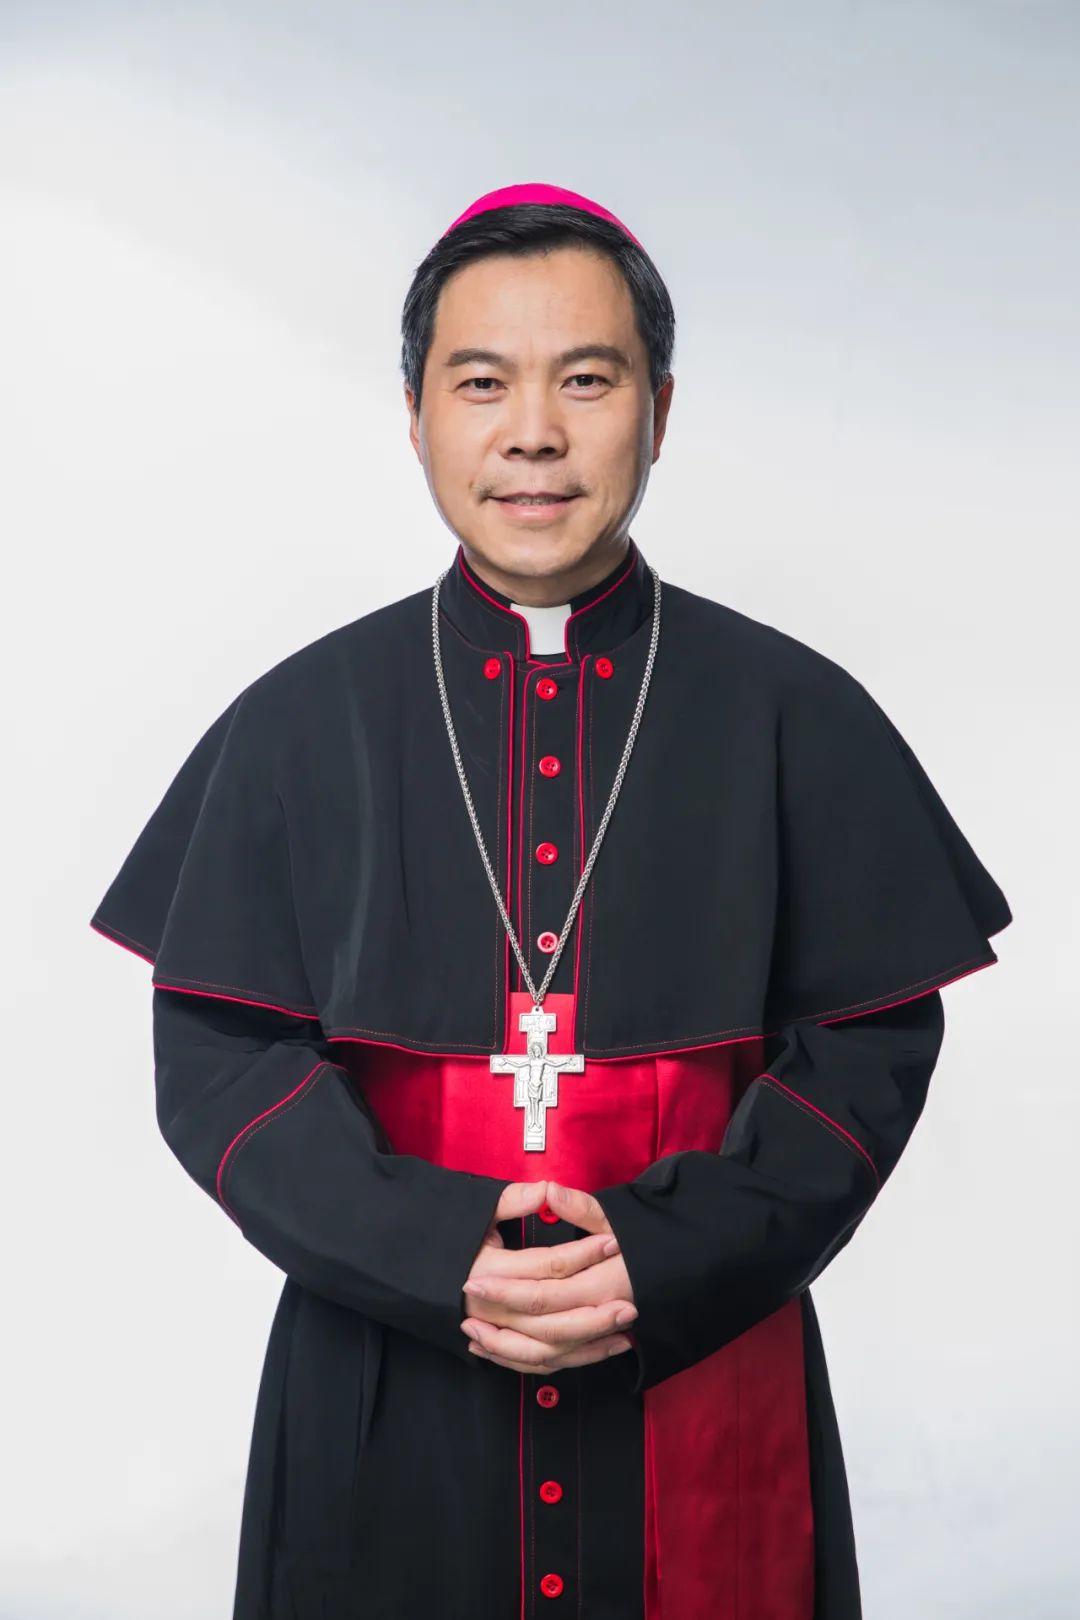 中国天主教主教团负责人简历 - 中国天主教